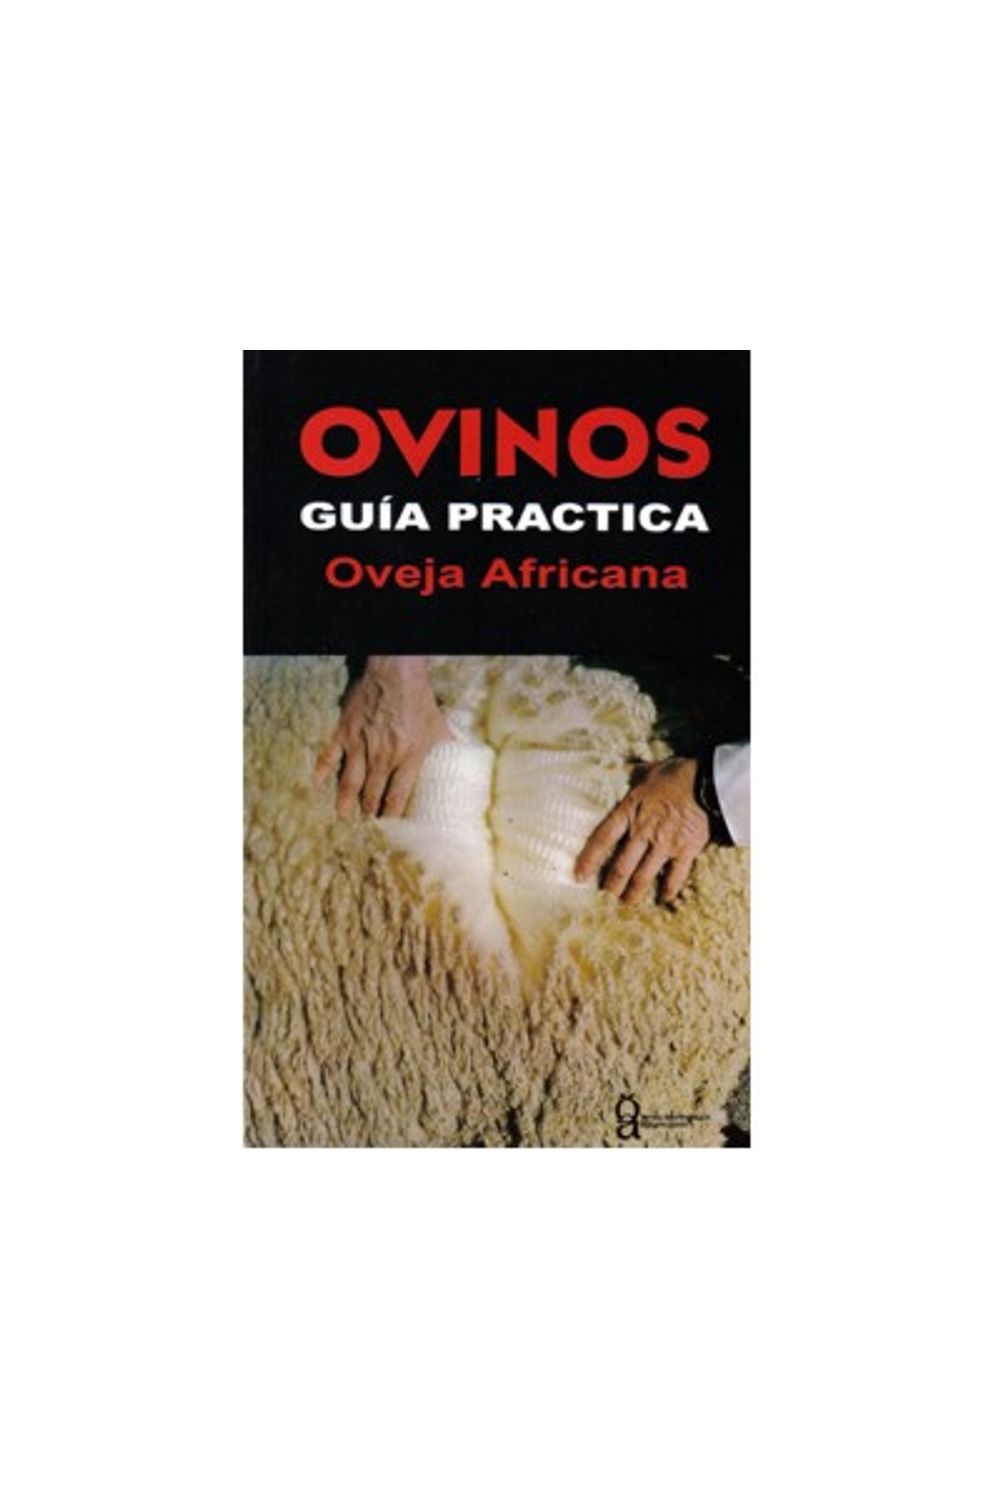 31_ovinos_guia_practica_africana_prod